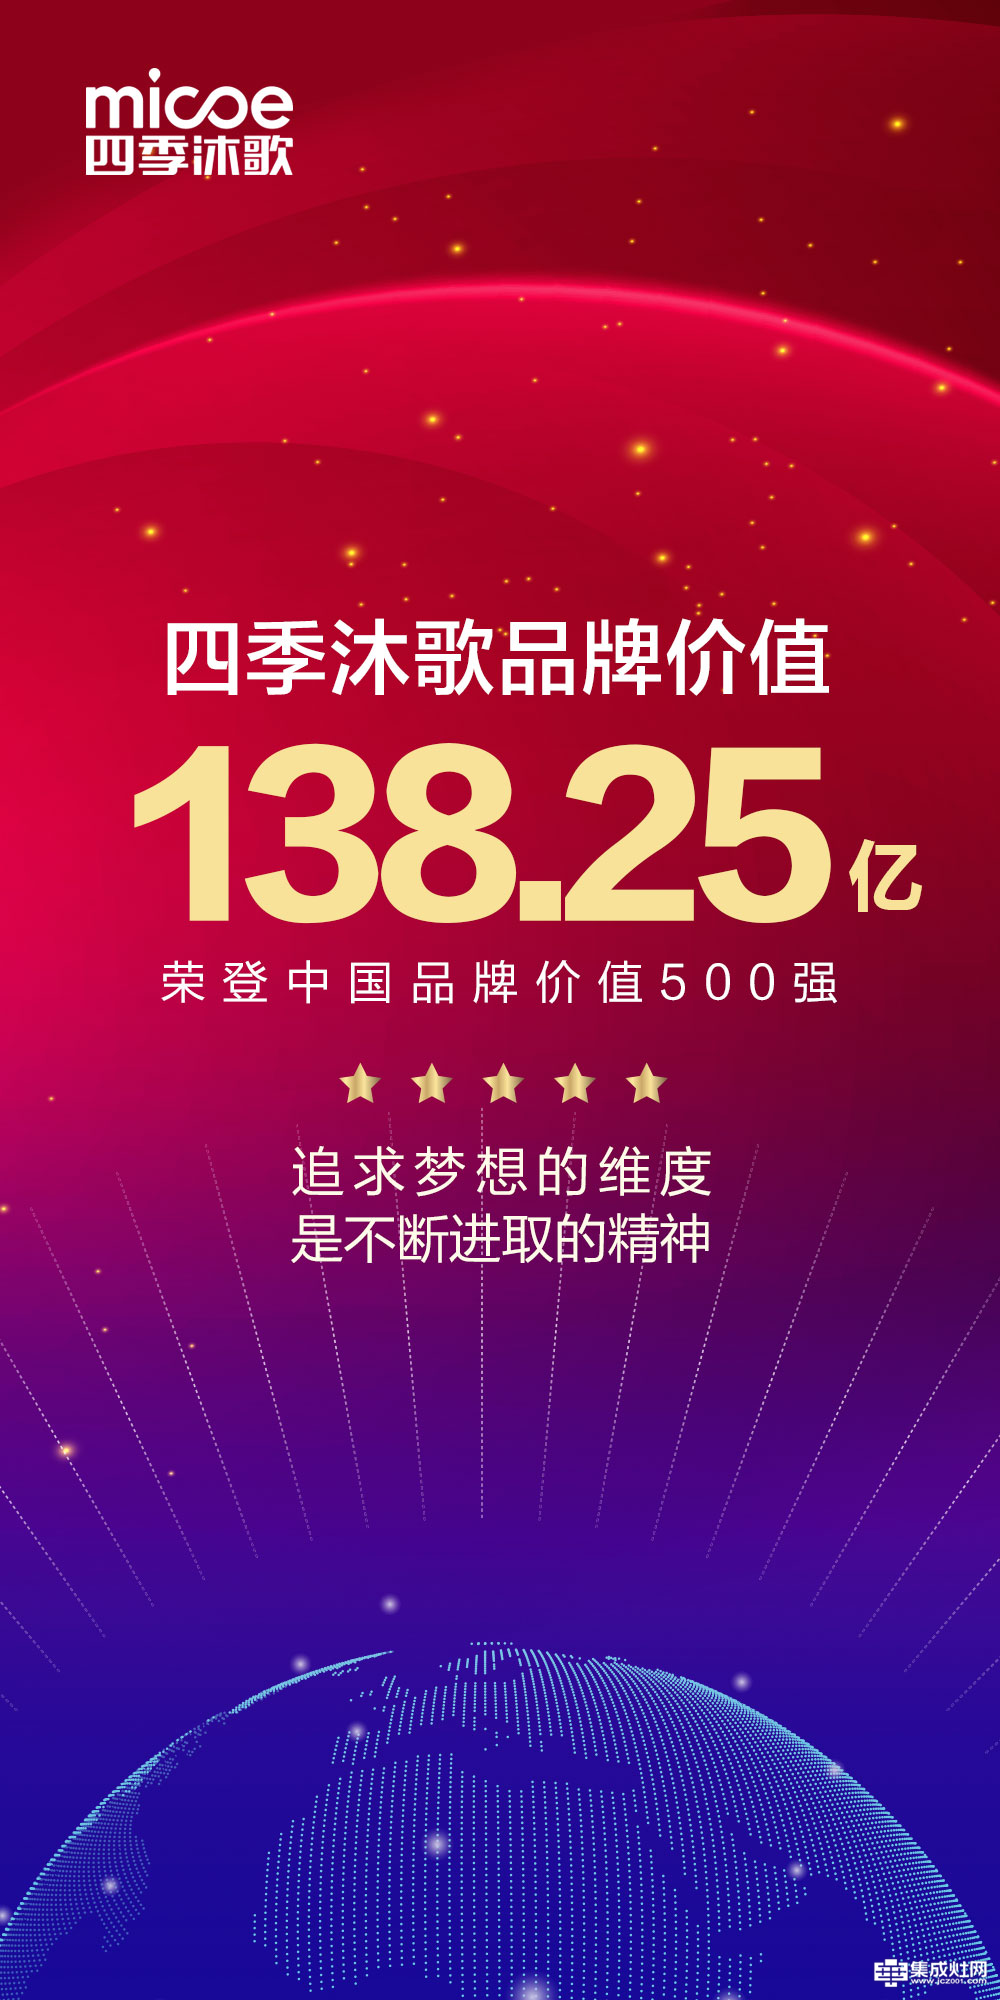 四季沐歌品牌价值138.25亿 荣登中国品牌价值500强